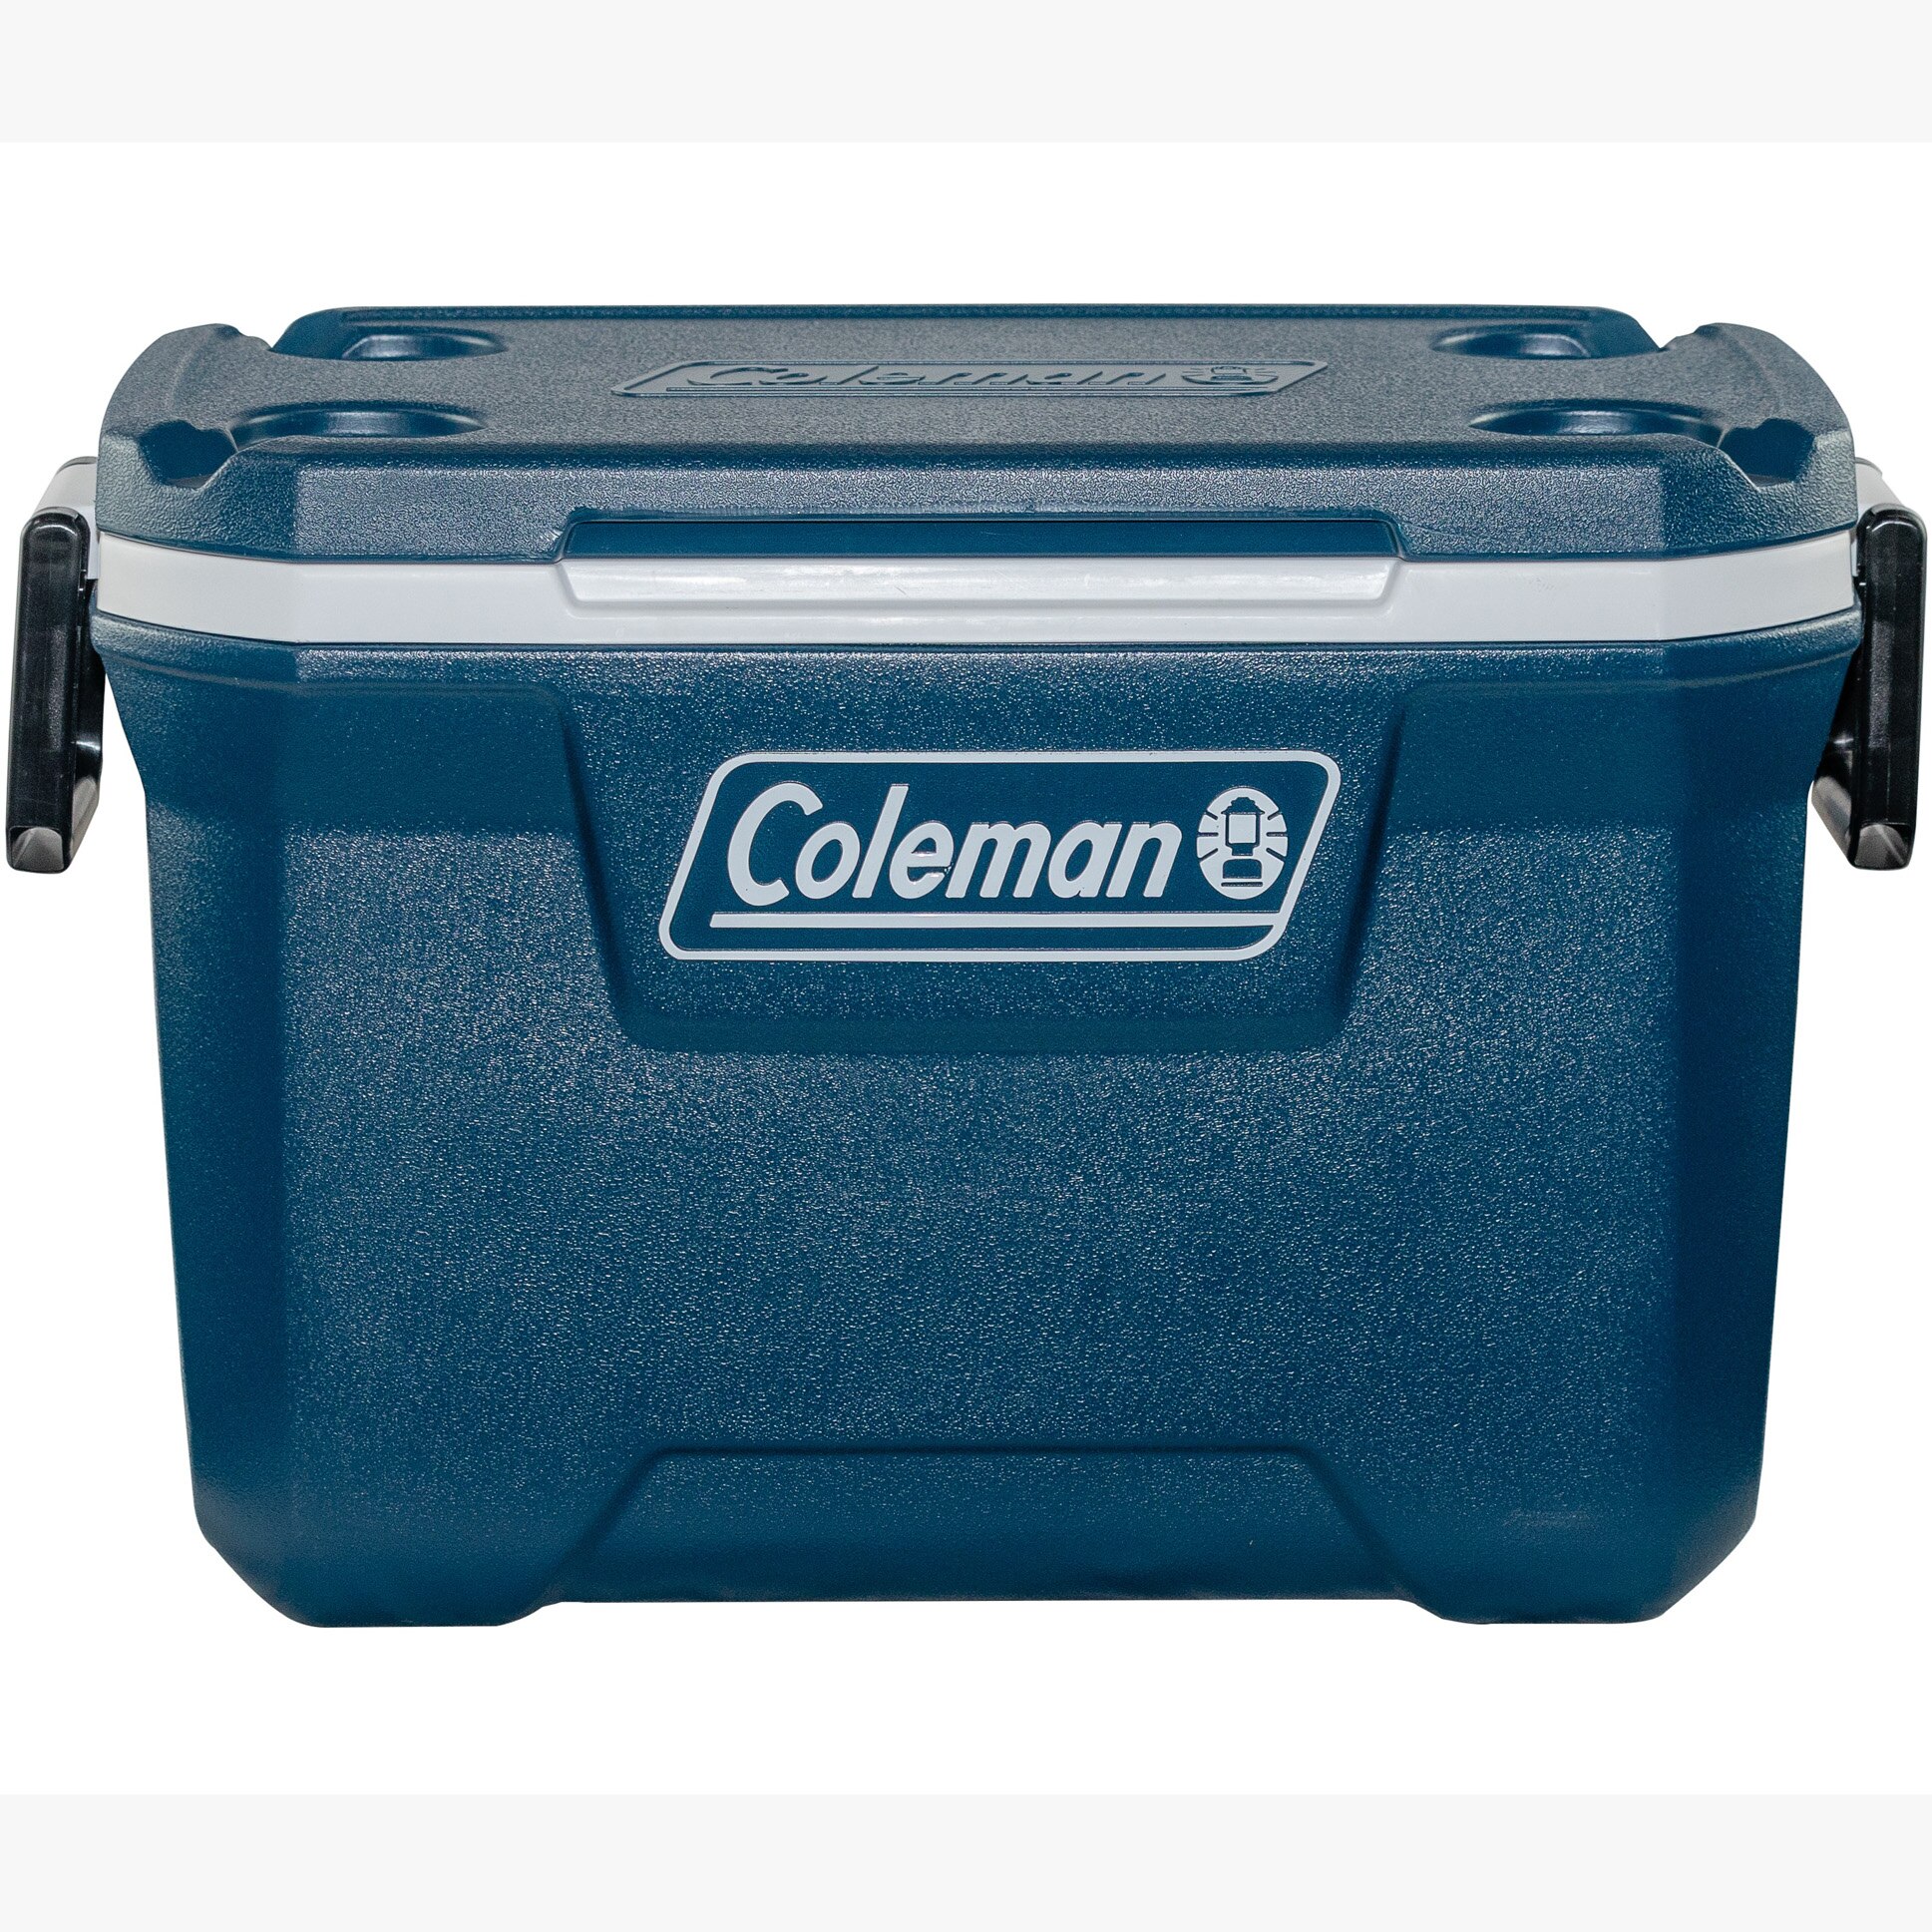 Fotografie Lada frigorifica pasiva Coleman Xtreme 52QT, 56x42x47 cm, 49 litri, bleumarin